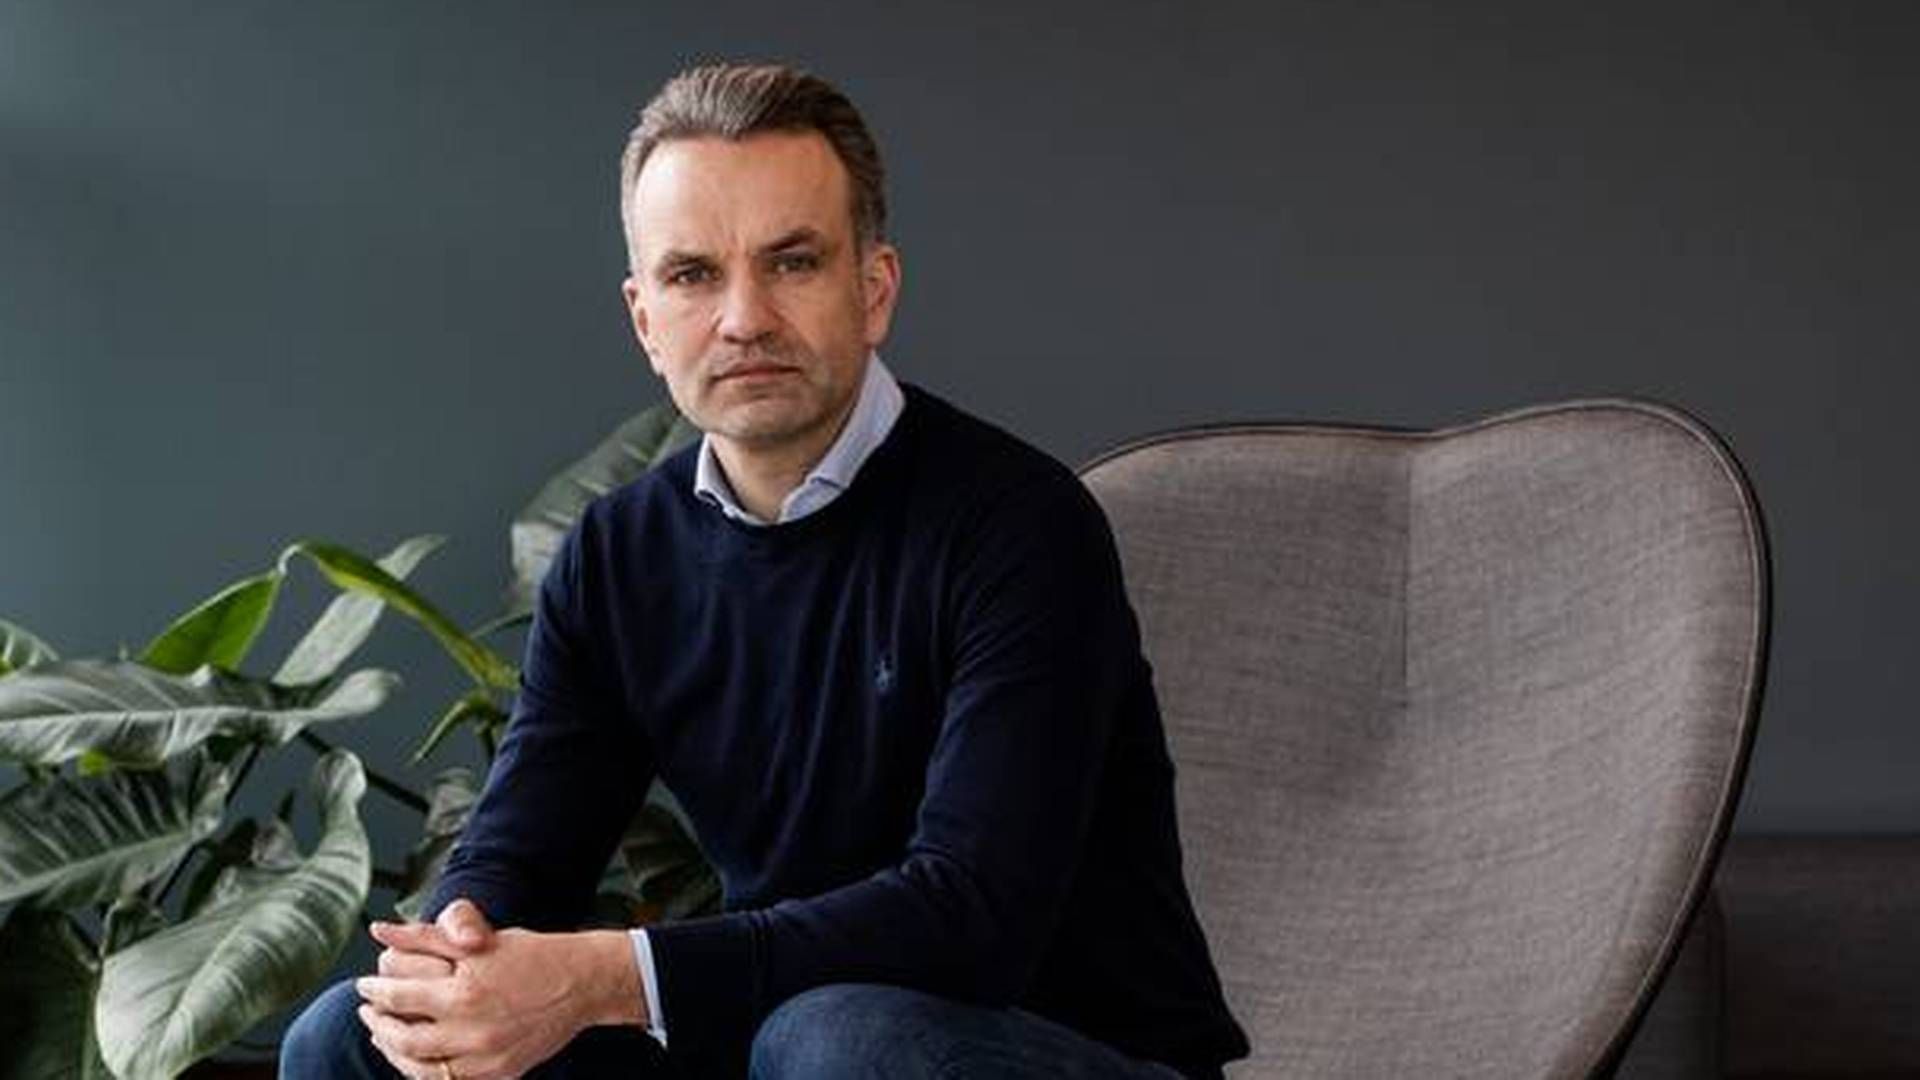 Stefan Plenge er adm. direktør og medejer i Nemlig.com. | Foto: Gregers Tycho